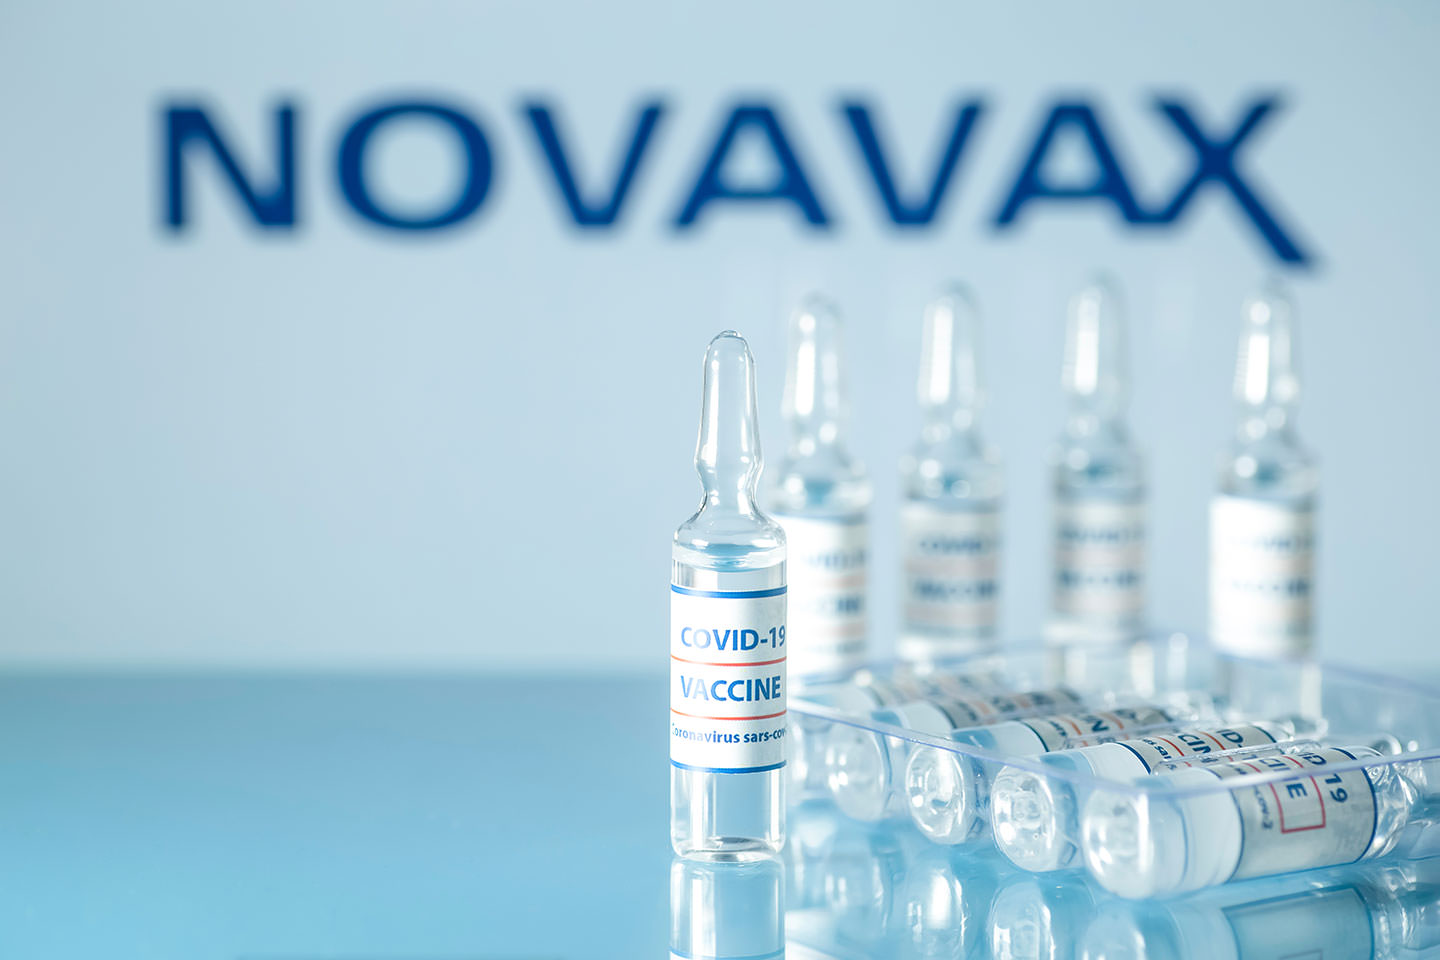 نواوکس چهارمین واکسن کرونا آمریکایی را با اثربخشی ۹۰ درصد ارائه داد